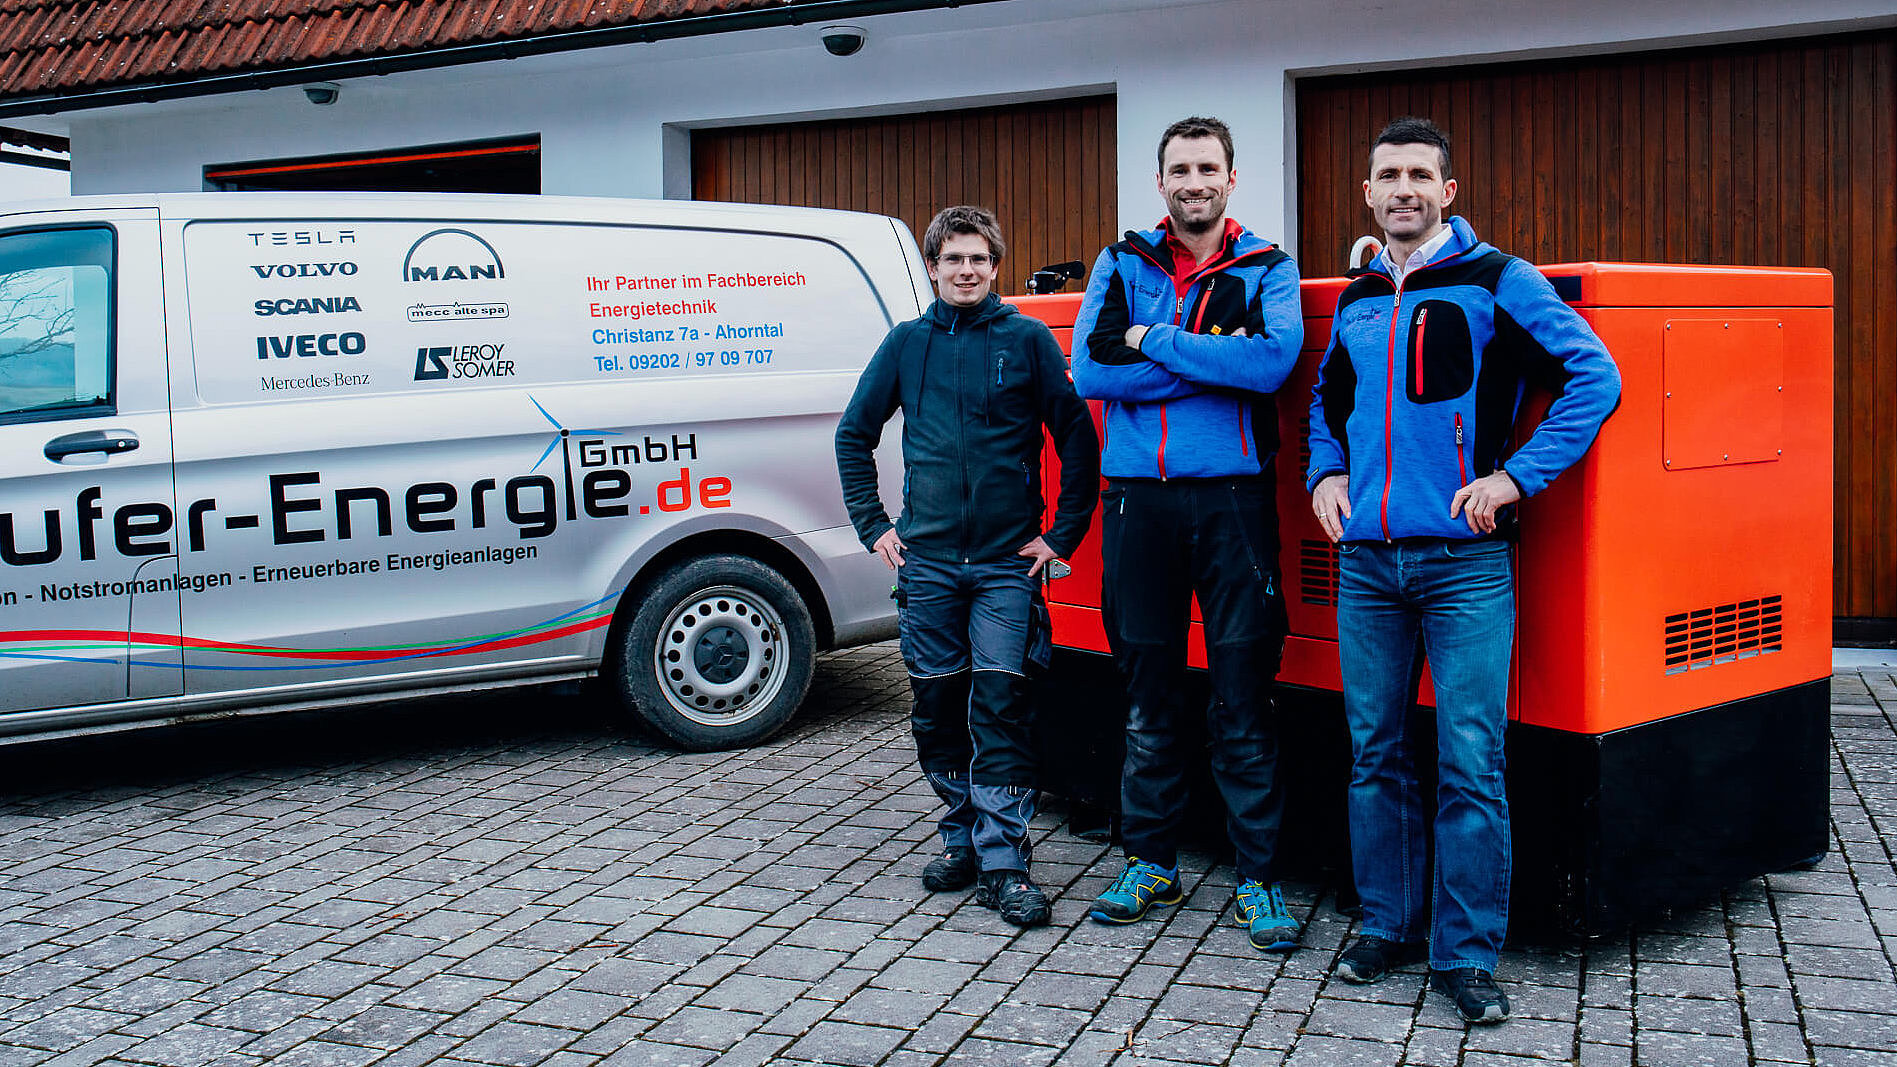 Das Team der Pfeufer-Energie GmbH, jung, motiviert, innovativ